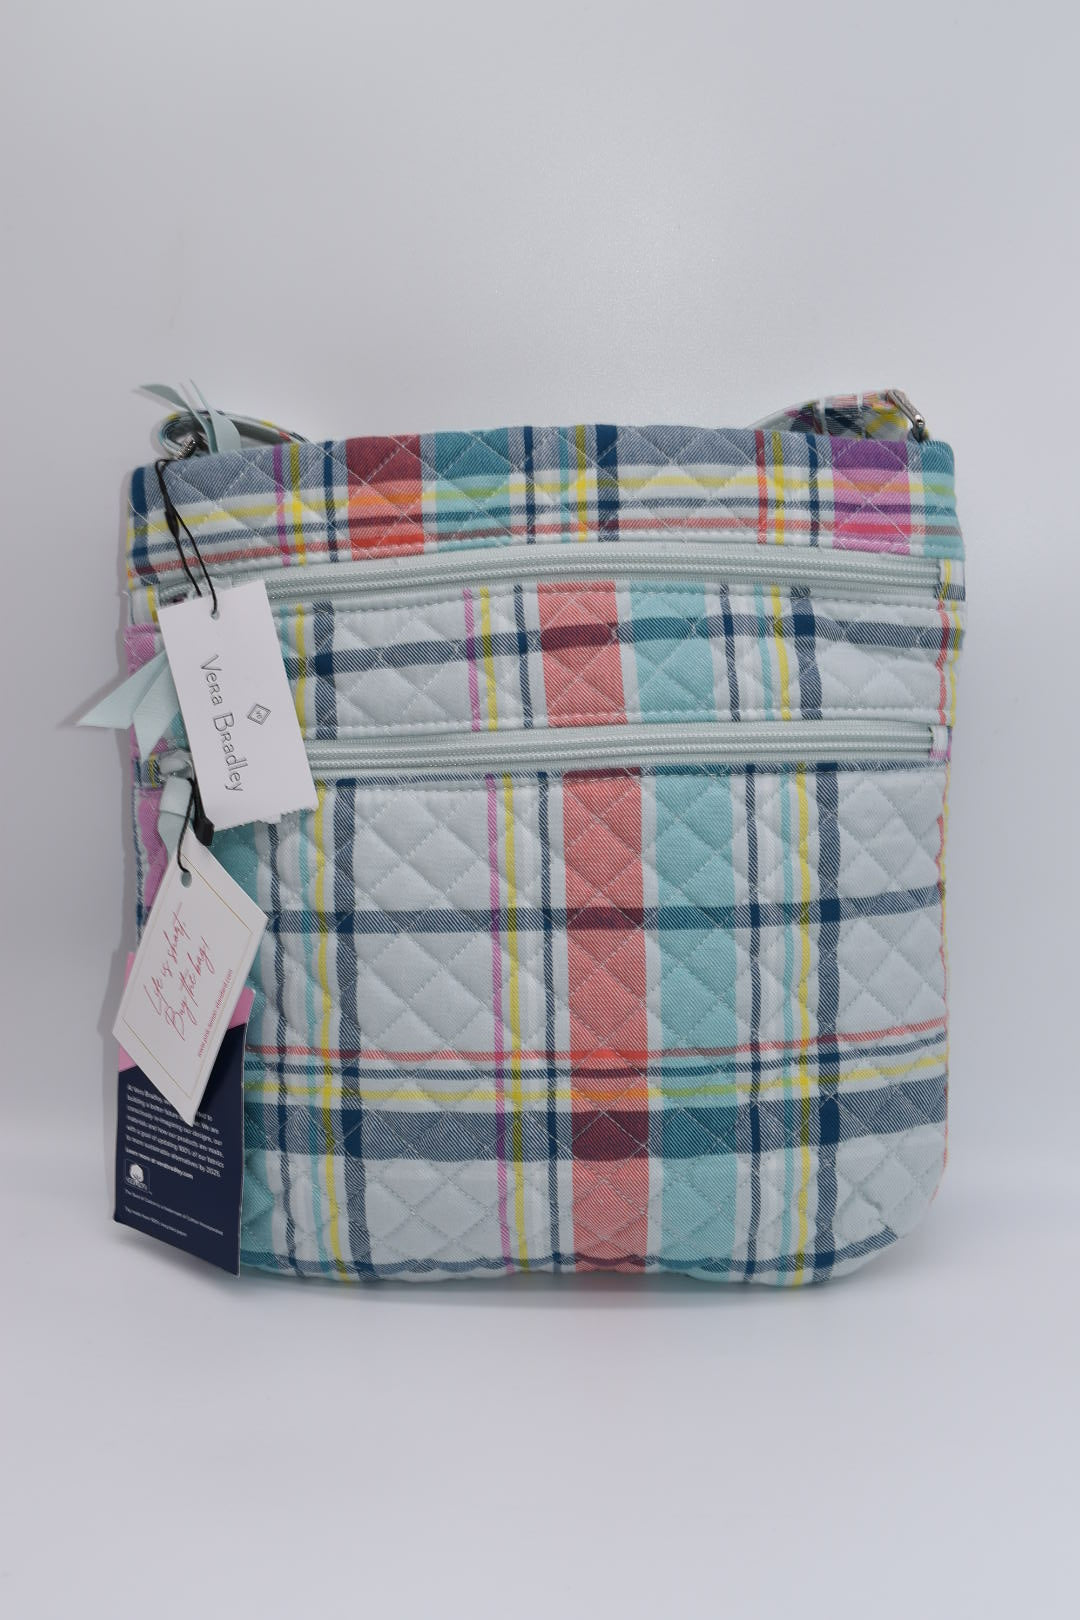 Vera Bradley Triple Zip Crossbody Bag in "Pastel Paisley" Pattern